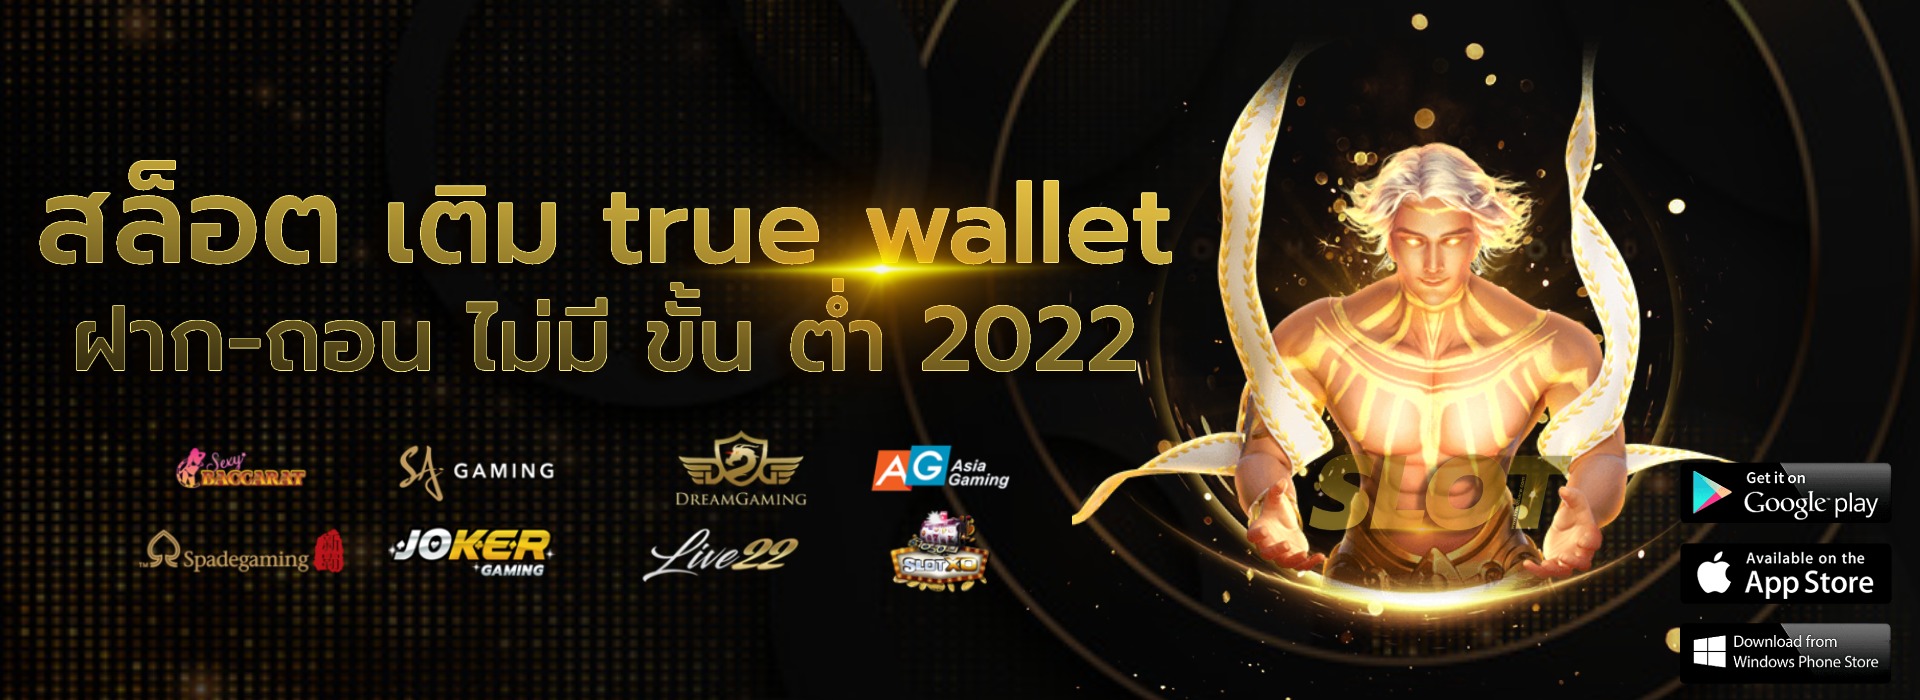 สล็อต เติม true wallet ฝาก-ถอน ไม่มี ขั้น ต่ํา 2022